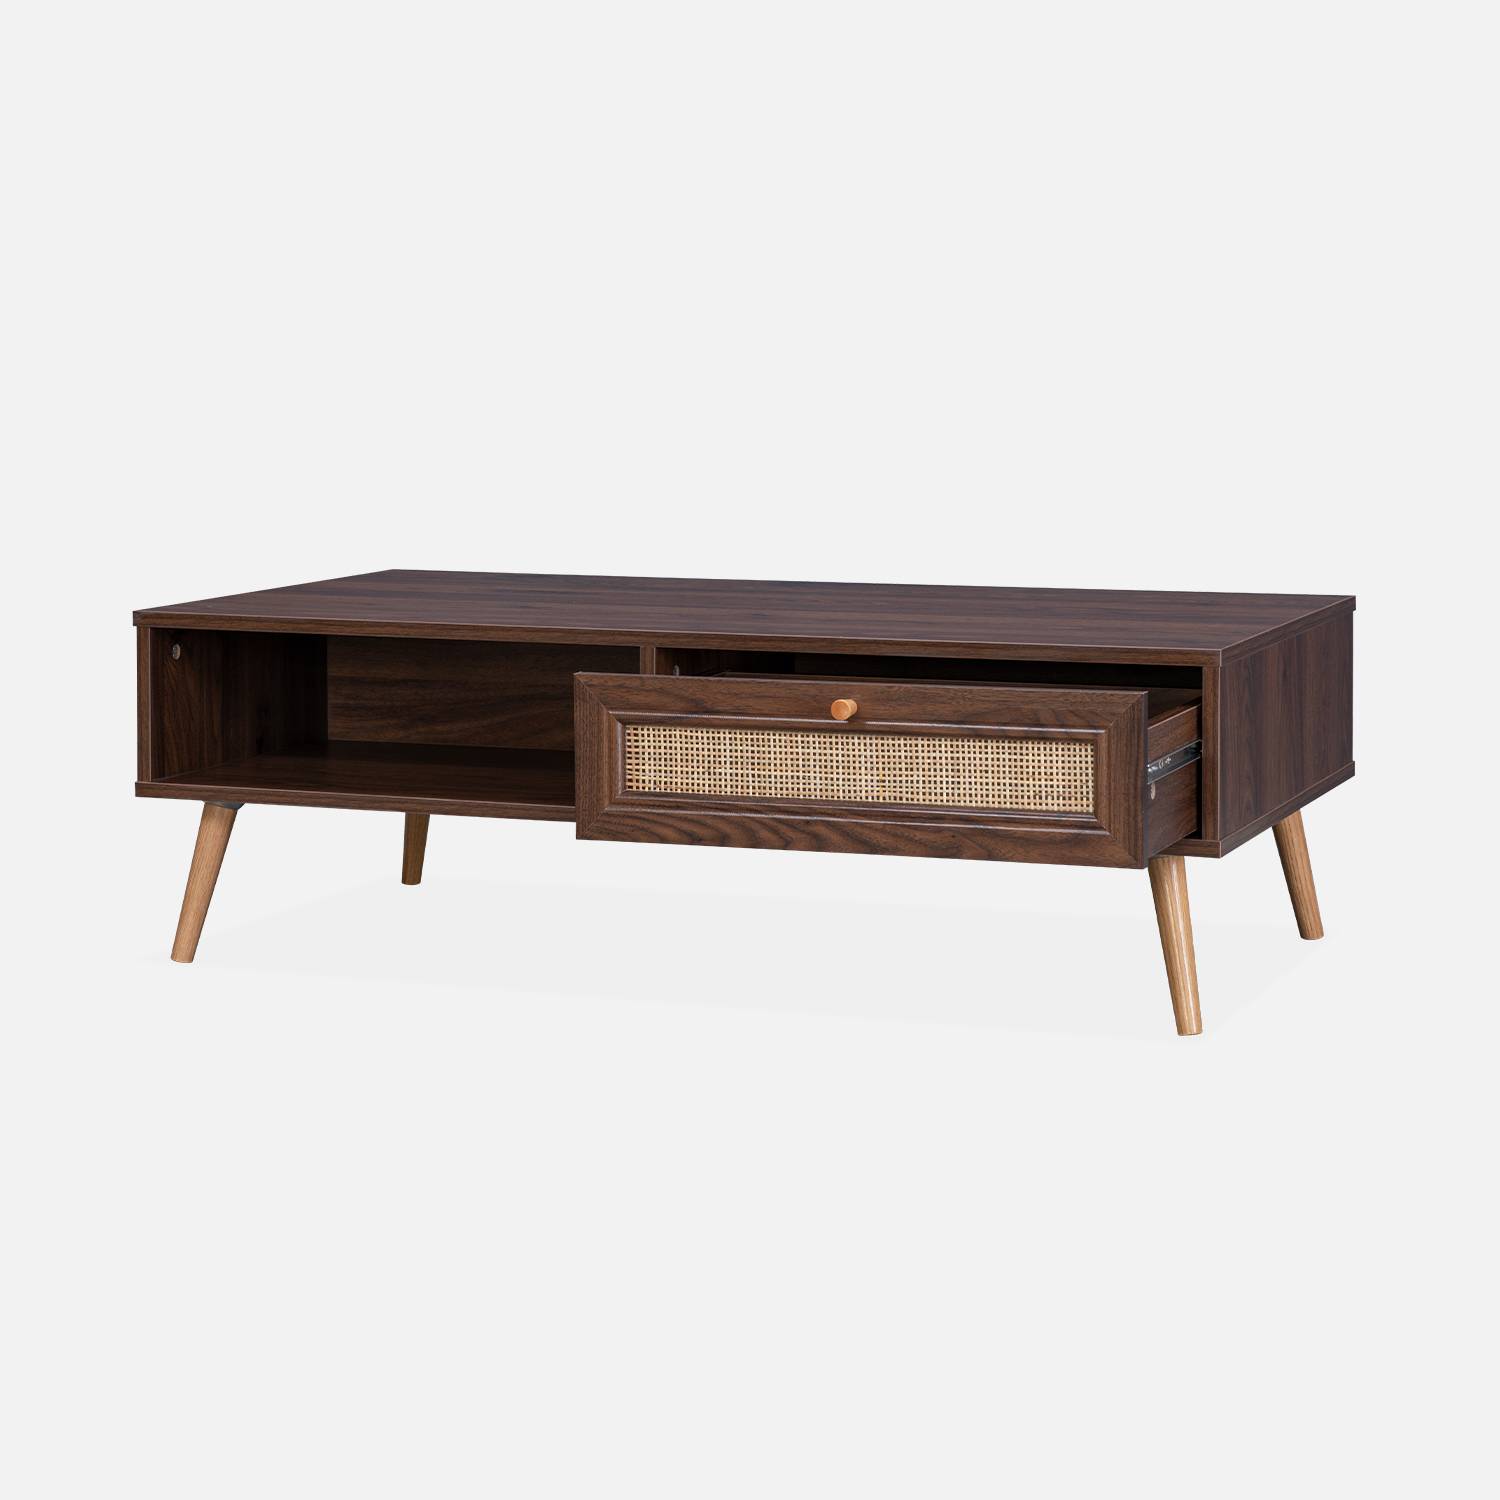 Table basse en cannage 110x59x39cm - Bohème - couleur bois foncé, 1 tiroir, 1 espace de rangement, pieds scandinaves Photo4